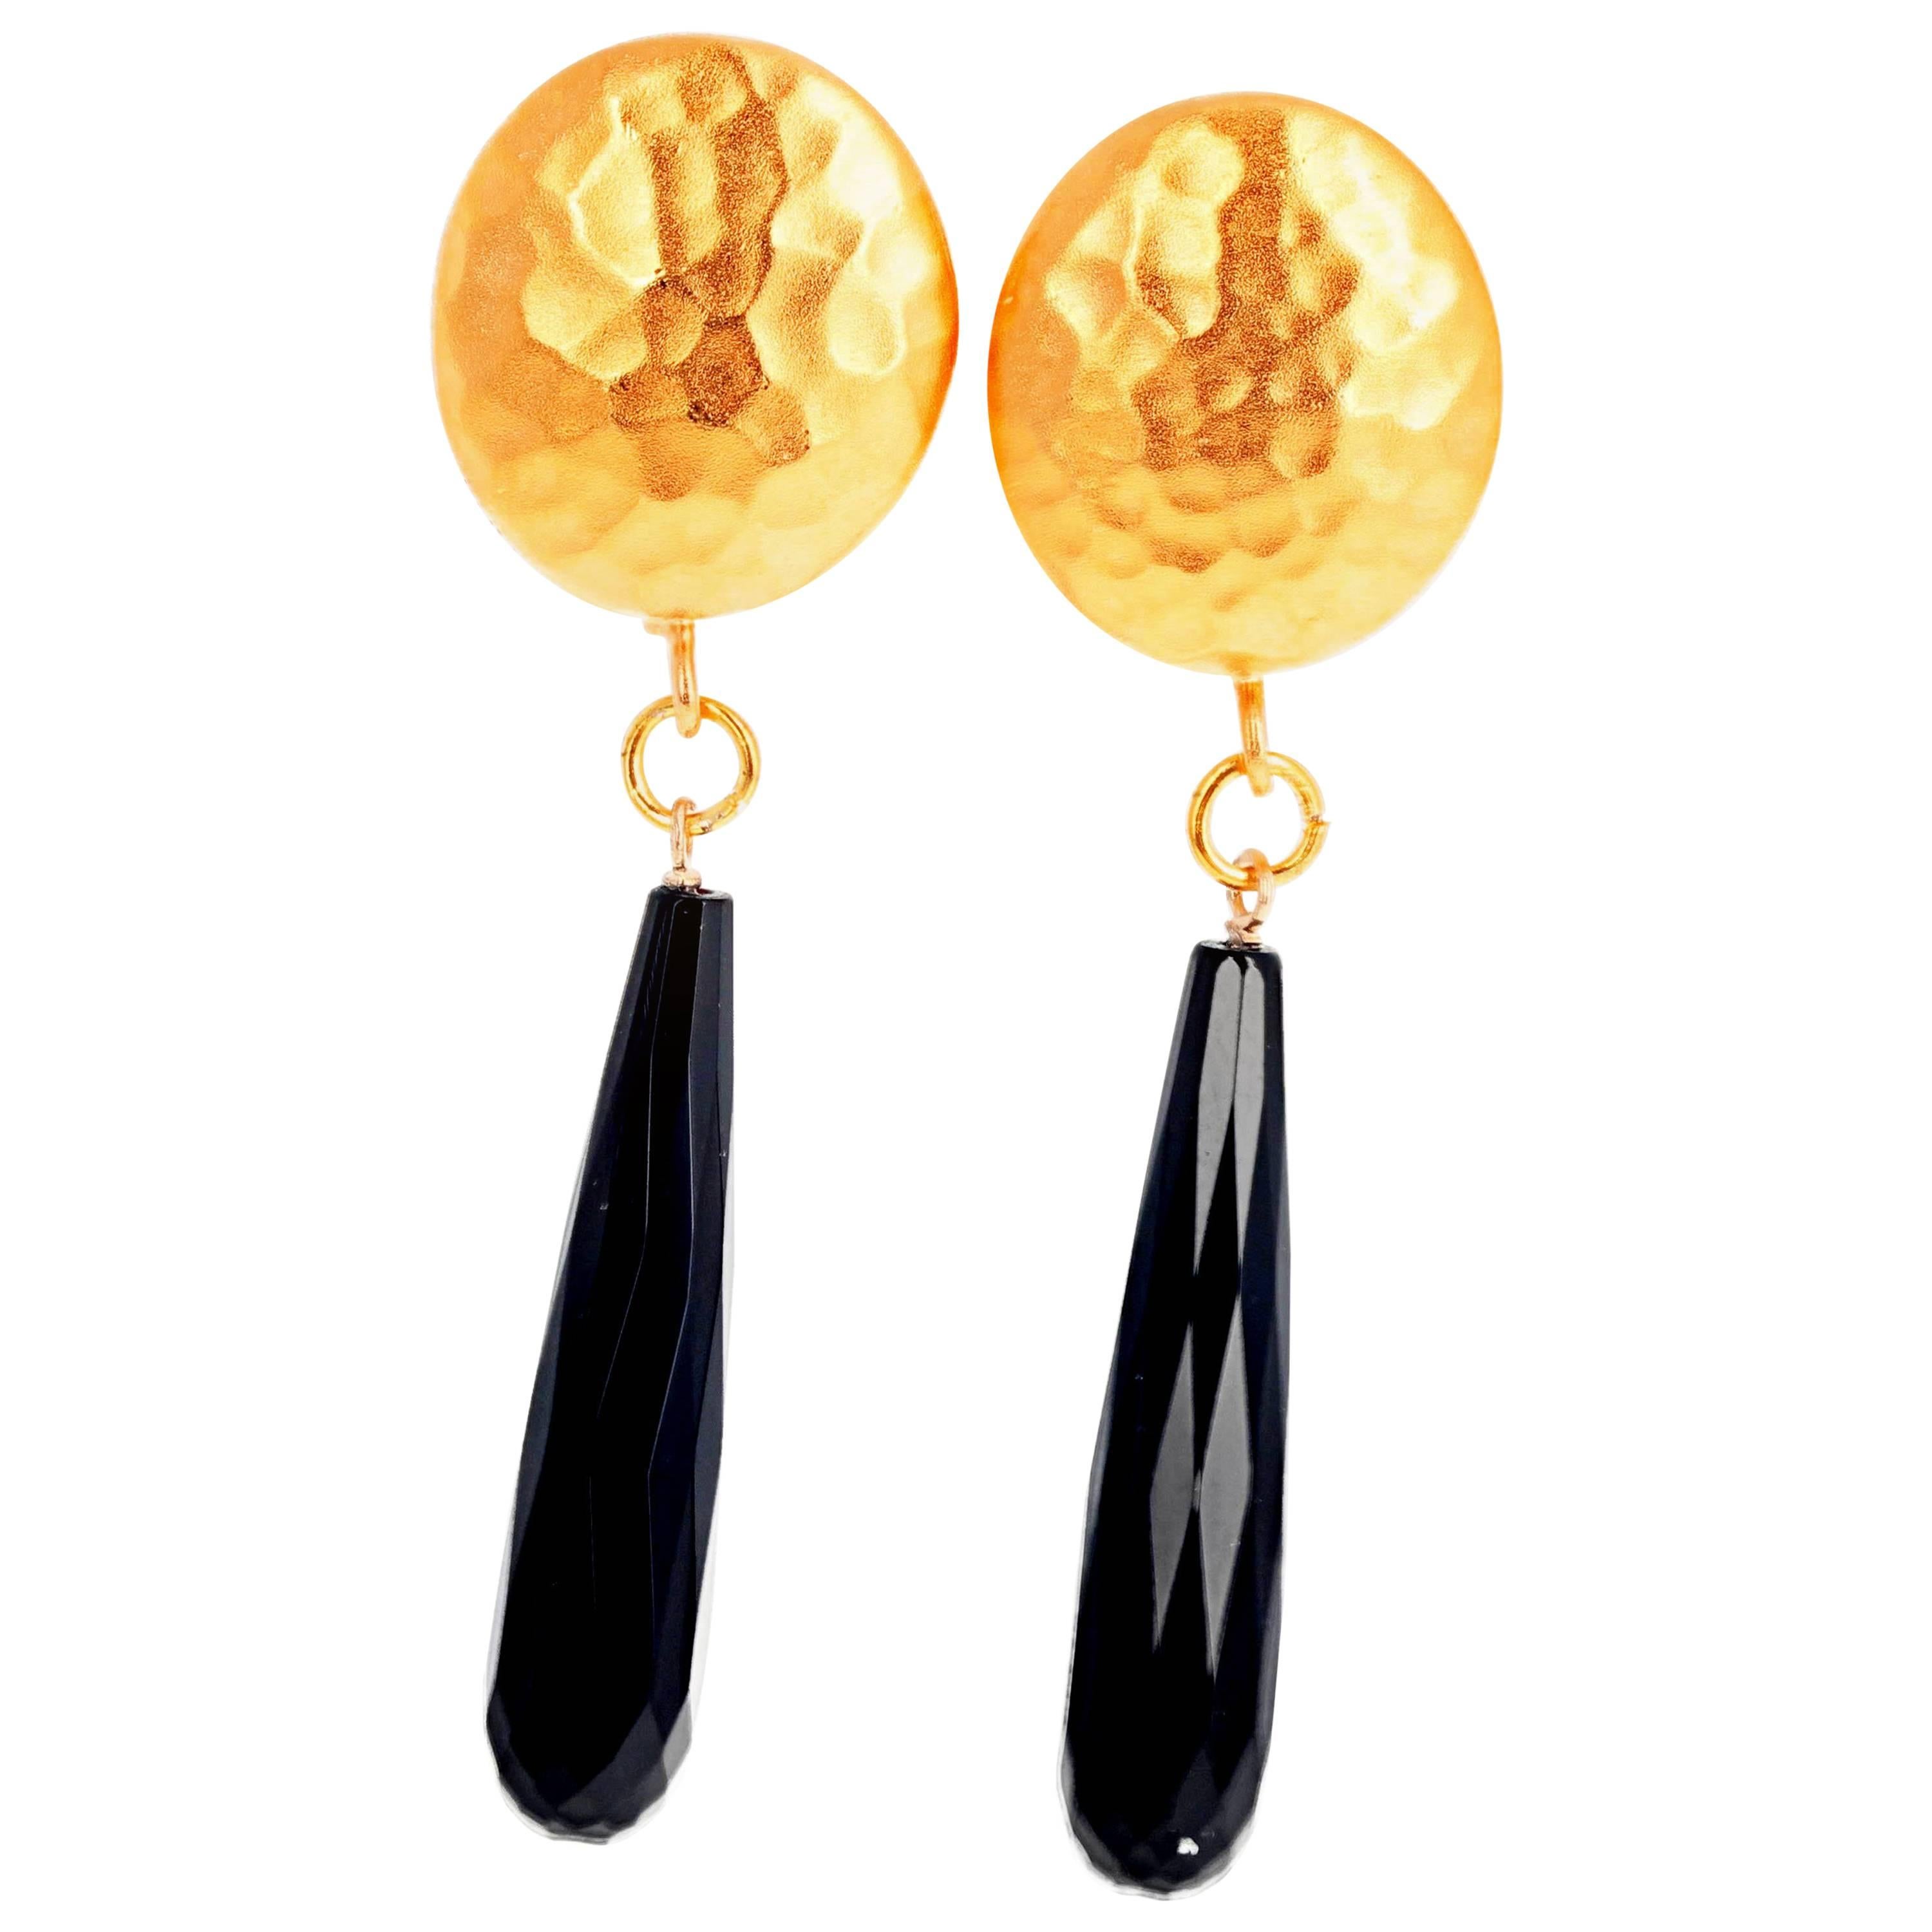 AJD 'Black Tie" Elegant Black Onyx Vermeil (Gold Plated) Clip-on Earrings